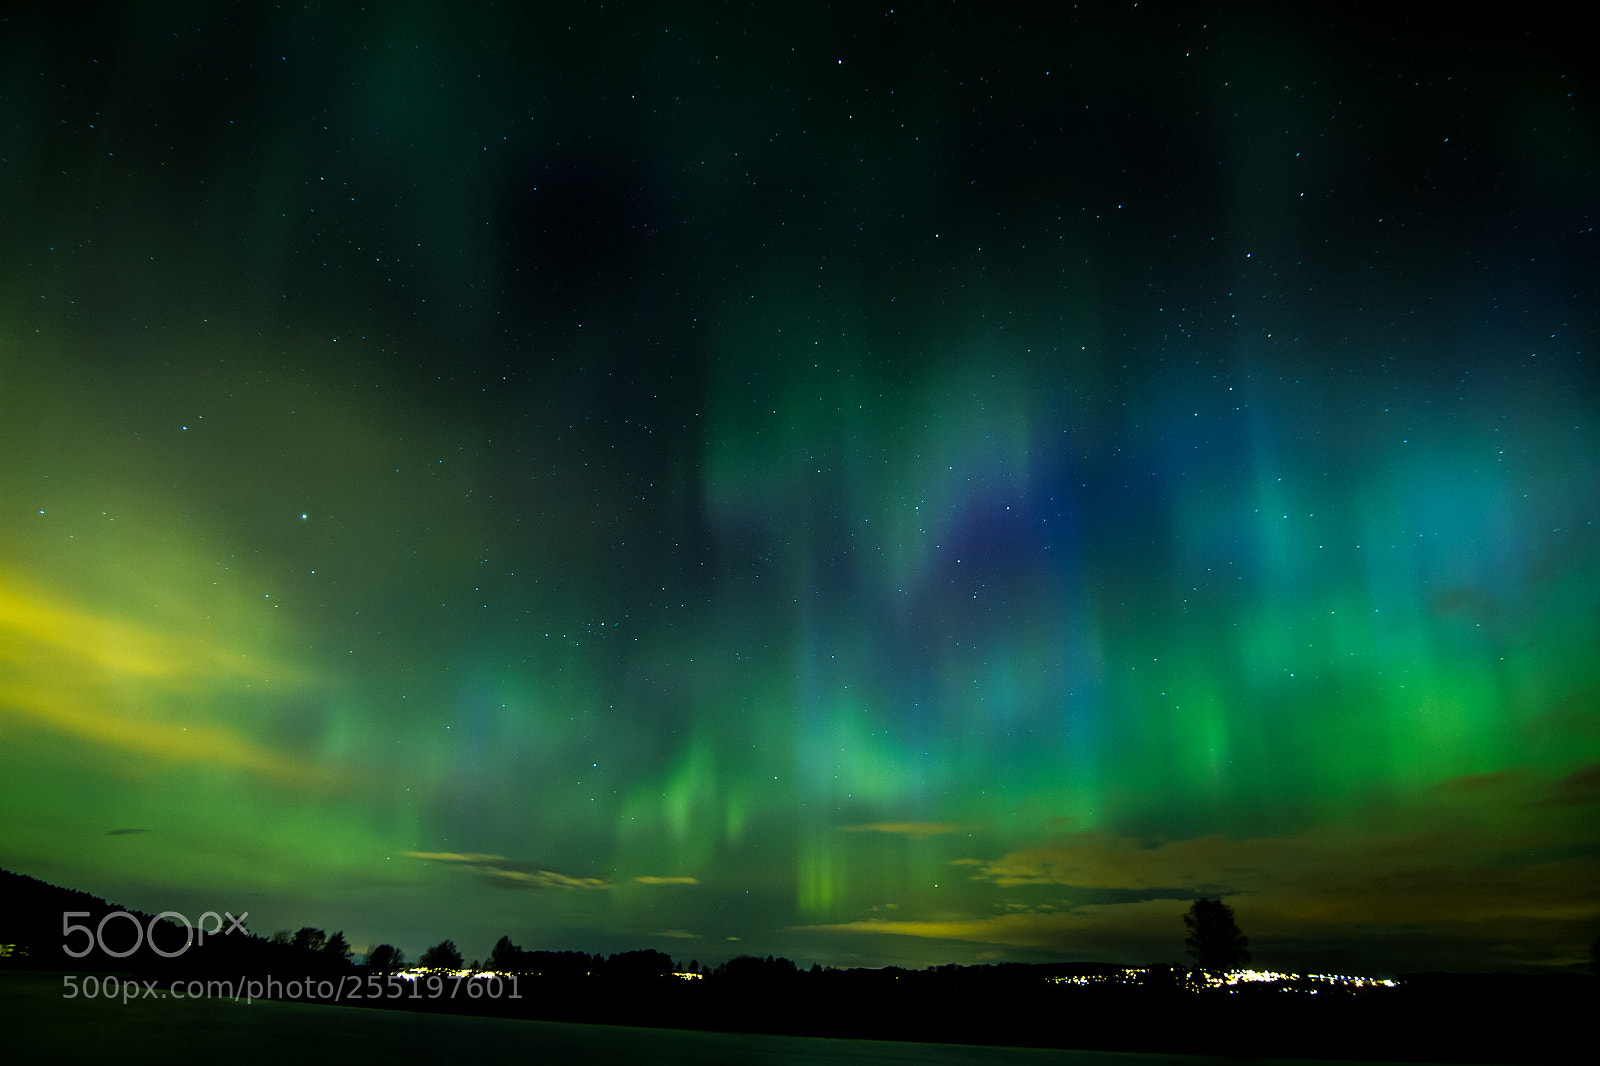 Canon EOS 7D sample photo. Aurora borealis iv photography